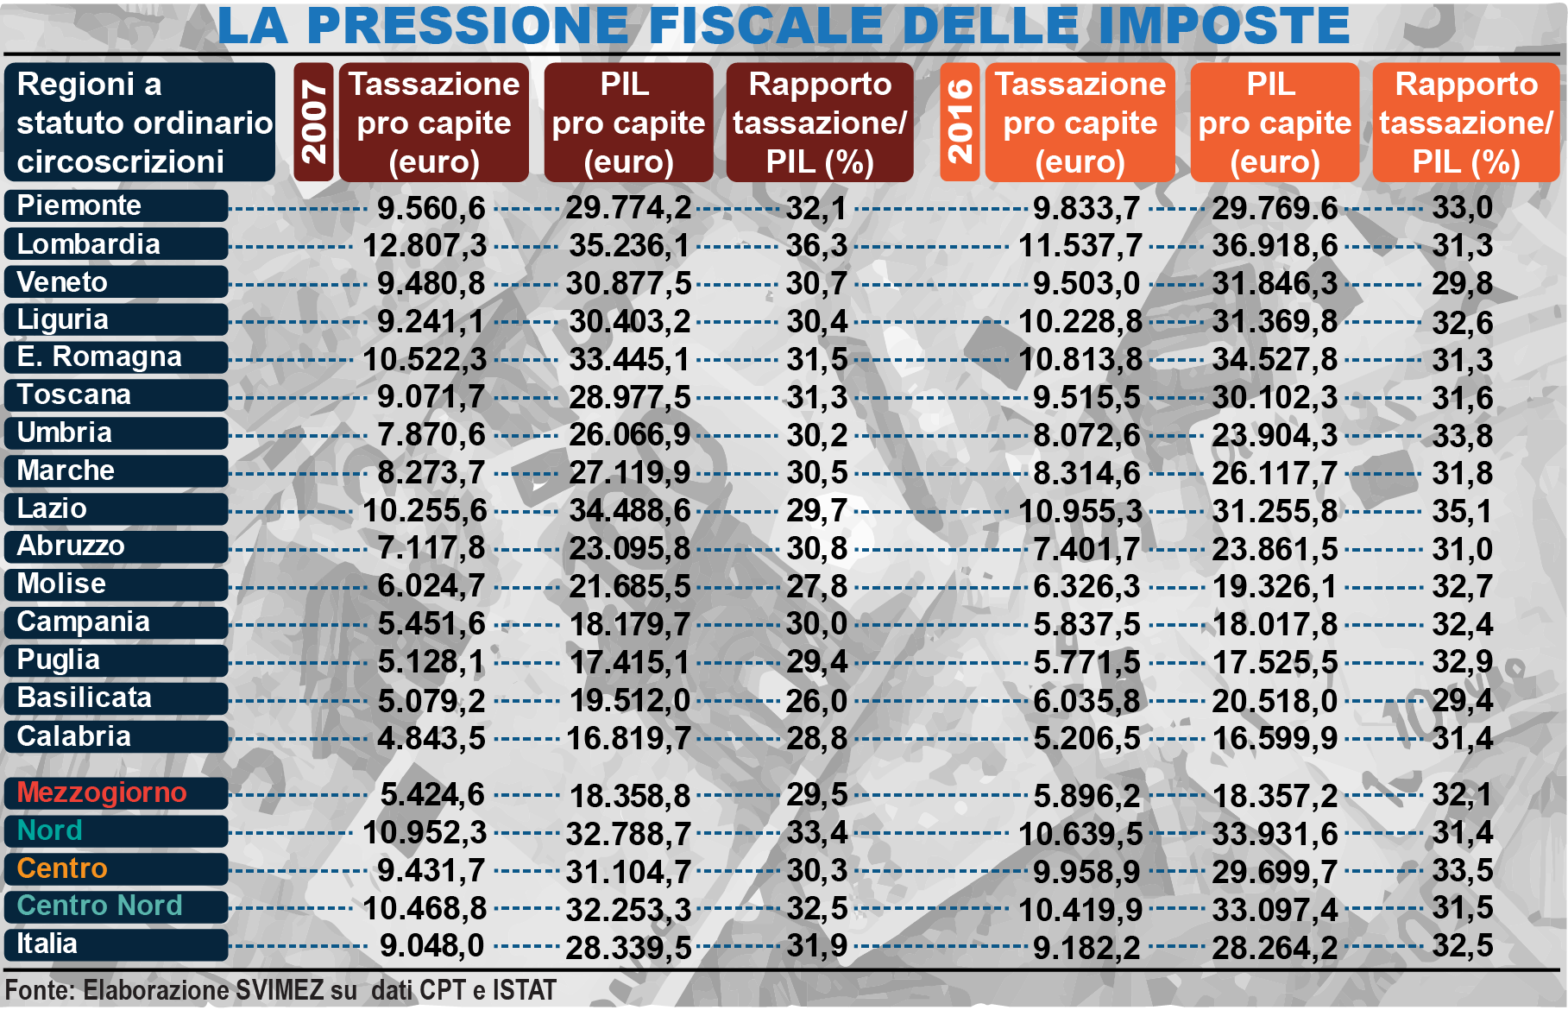 grafico pressione fiscale web.png